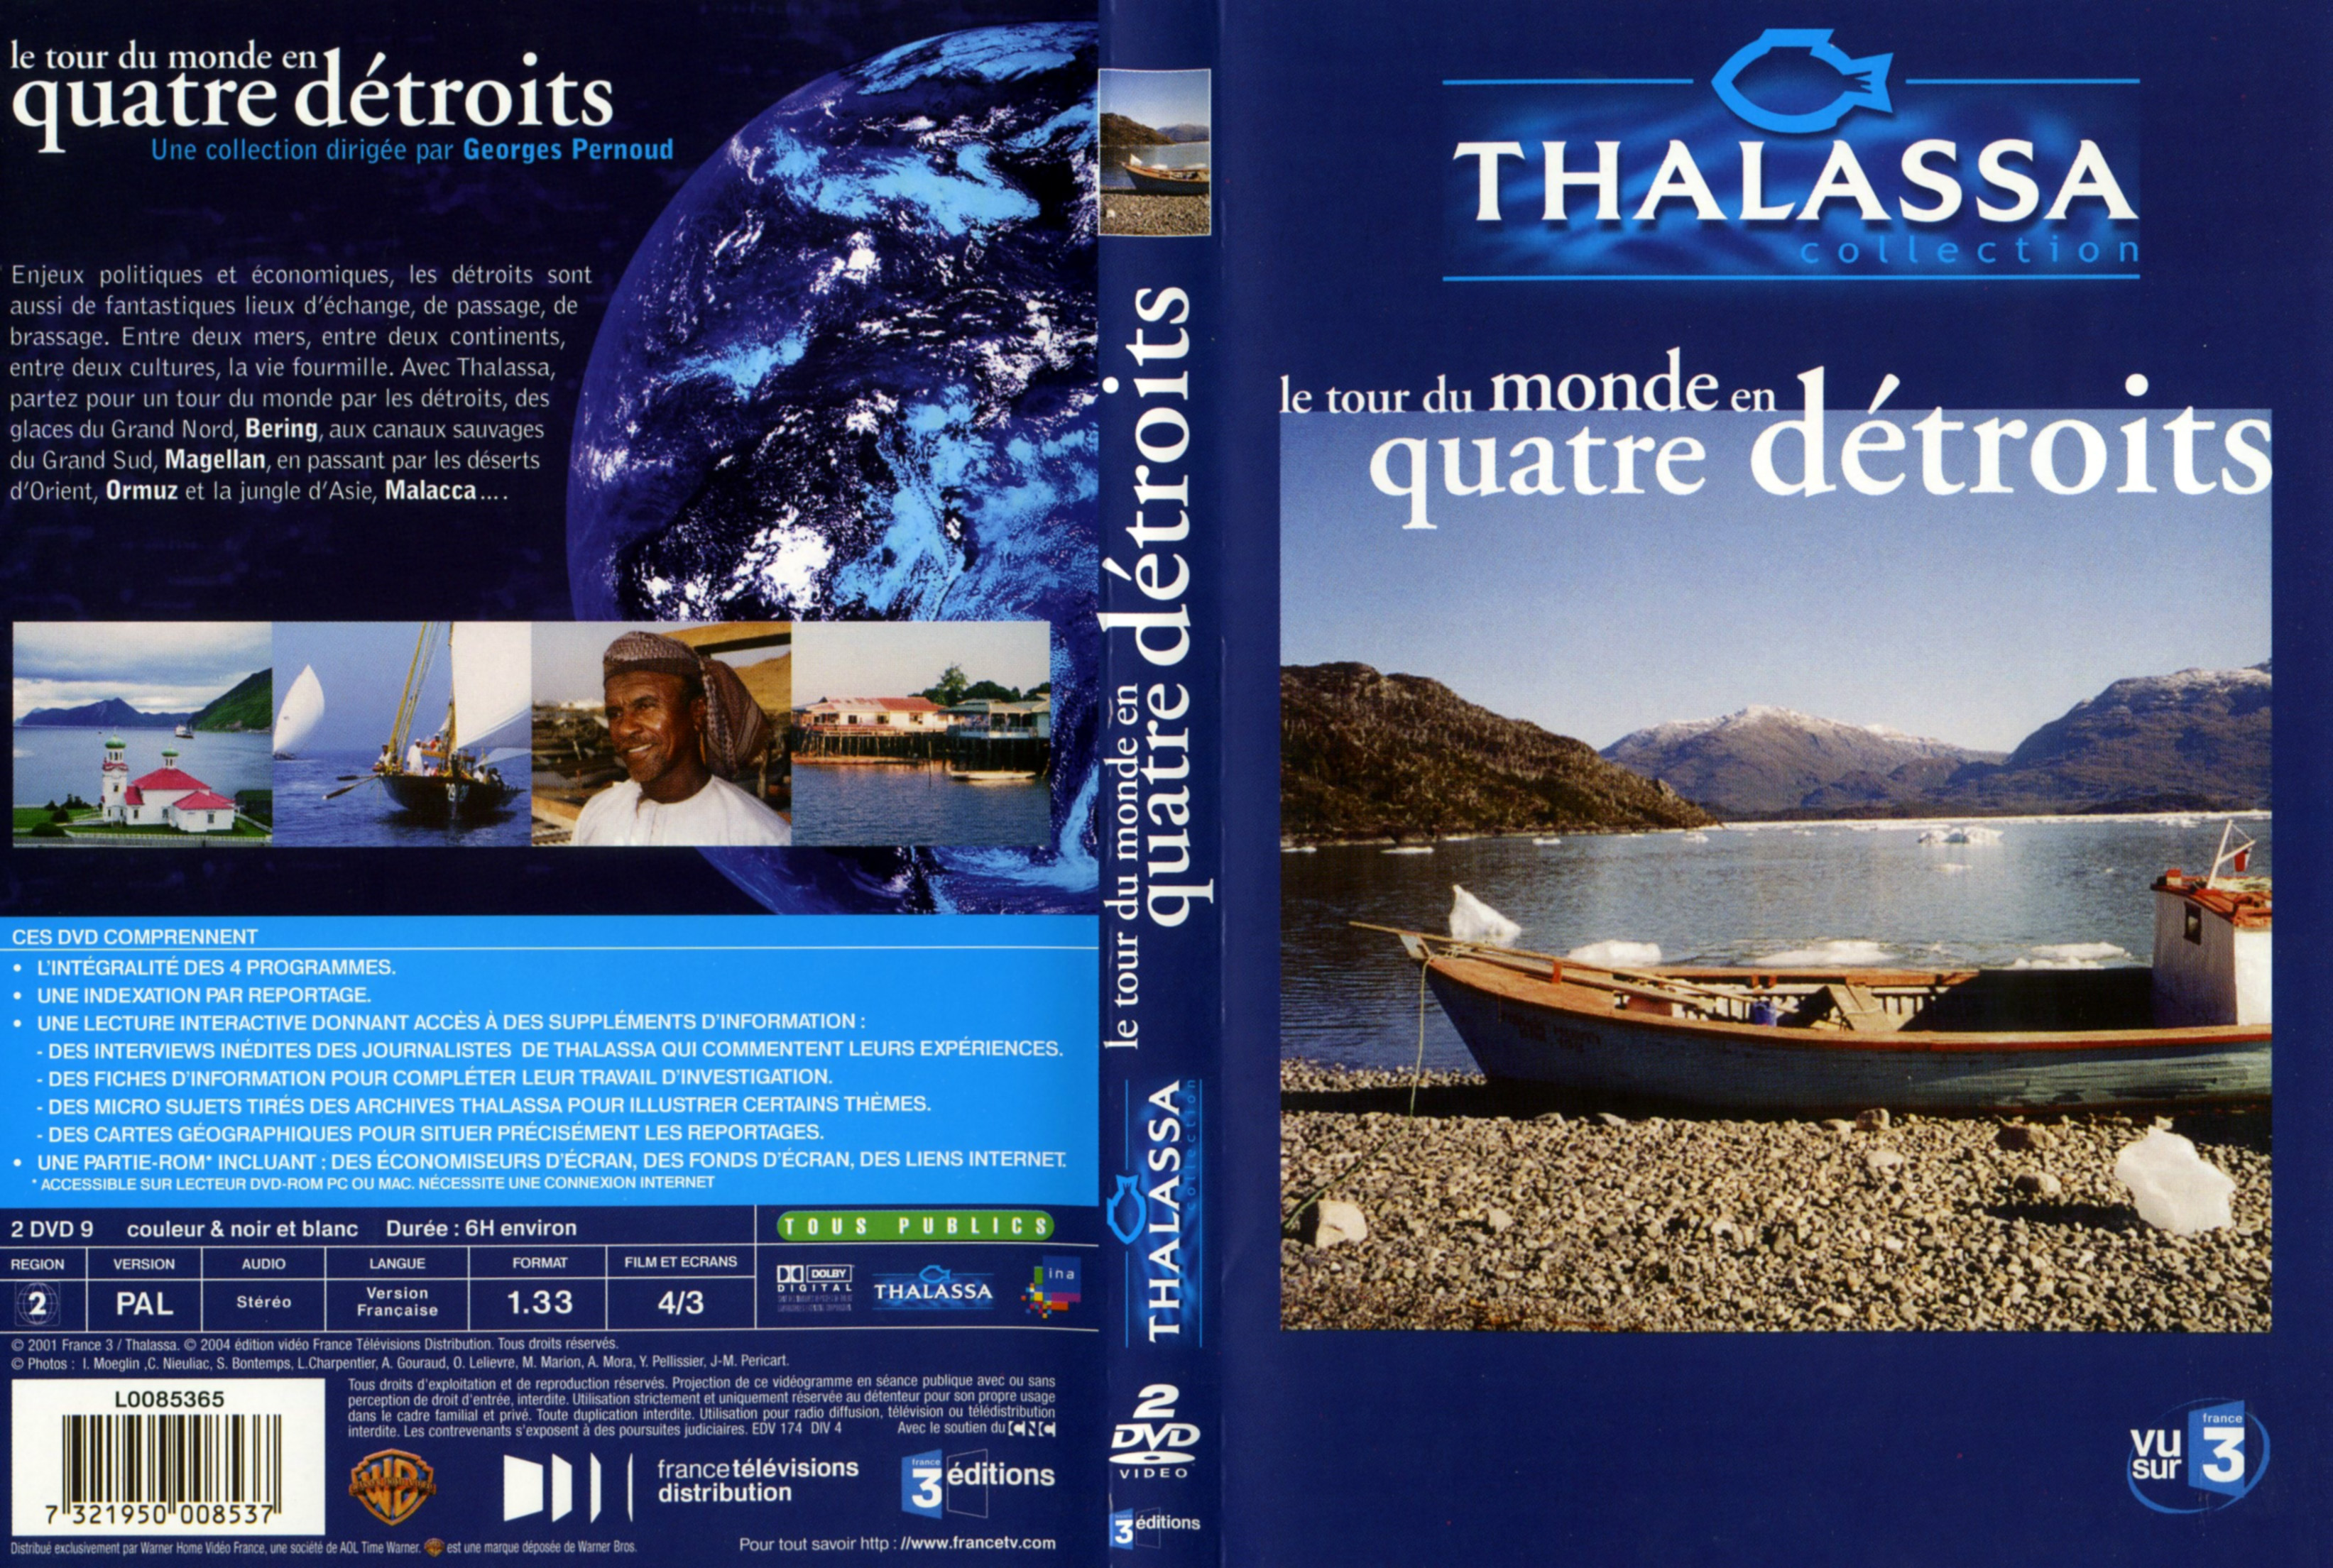 Jaquette DVD Thalassa - Tour du monde en quatre detroits